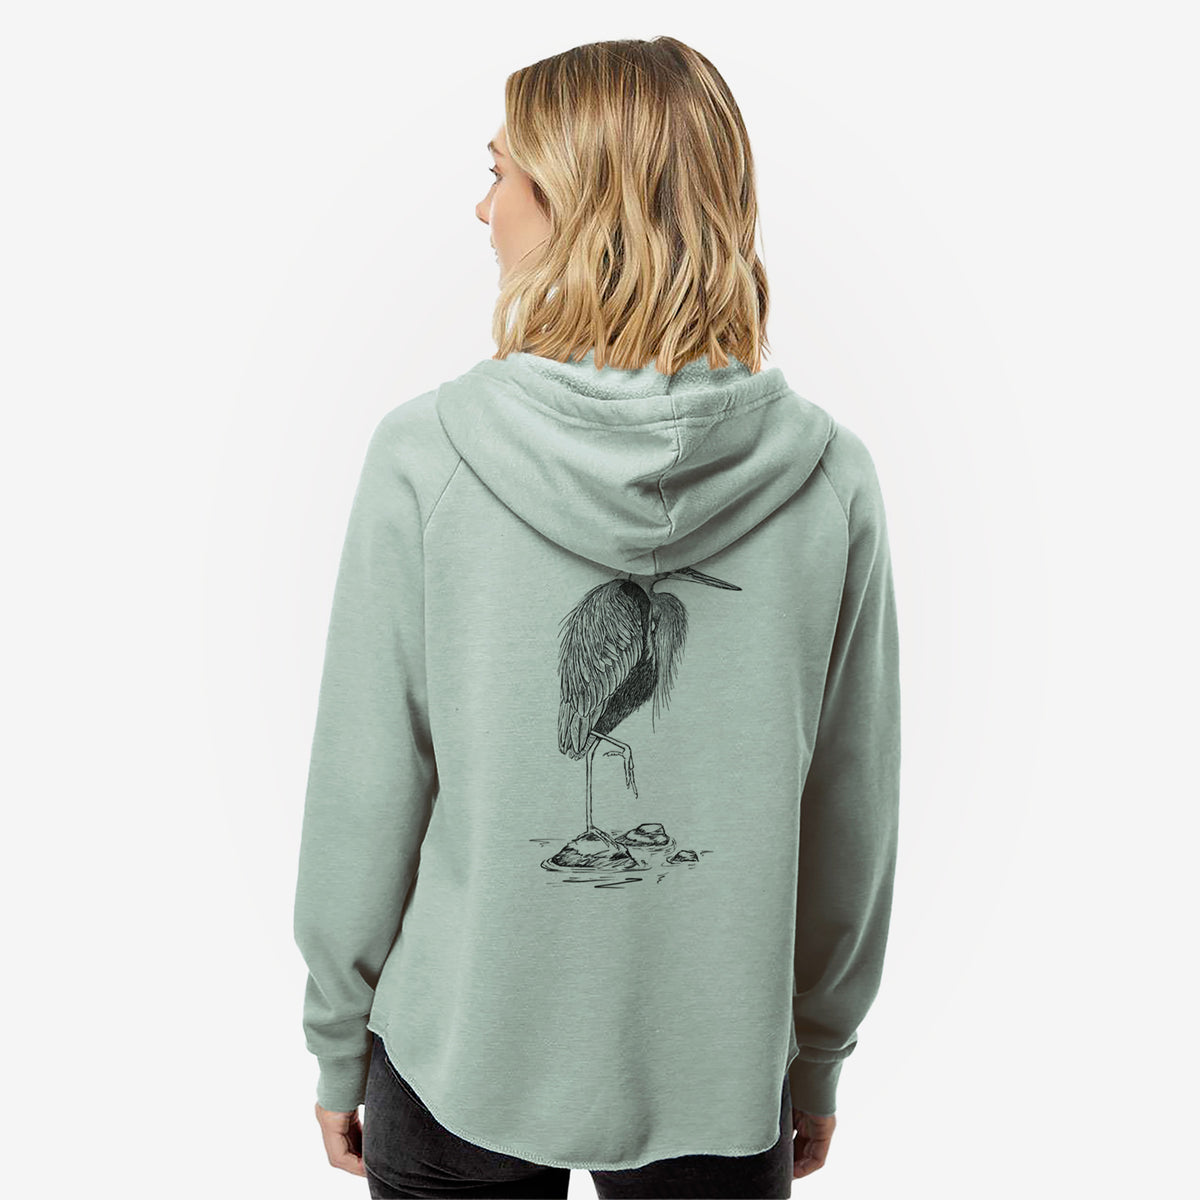 Ardea herodias - Great Blue Heron - Women&#39;s Cali Wave Zip-Up Sweatshirt